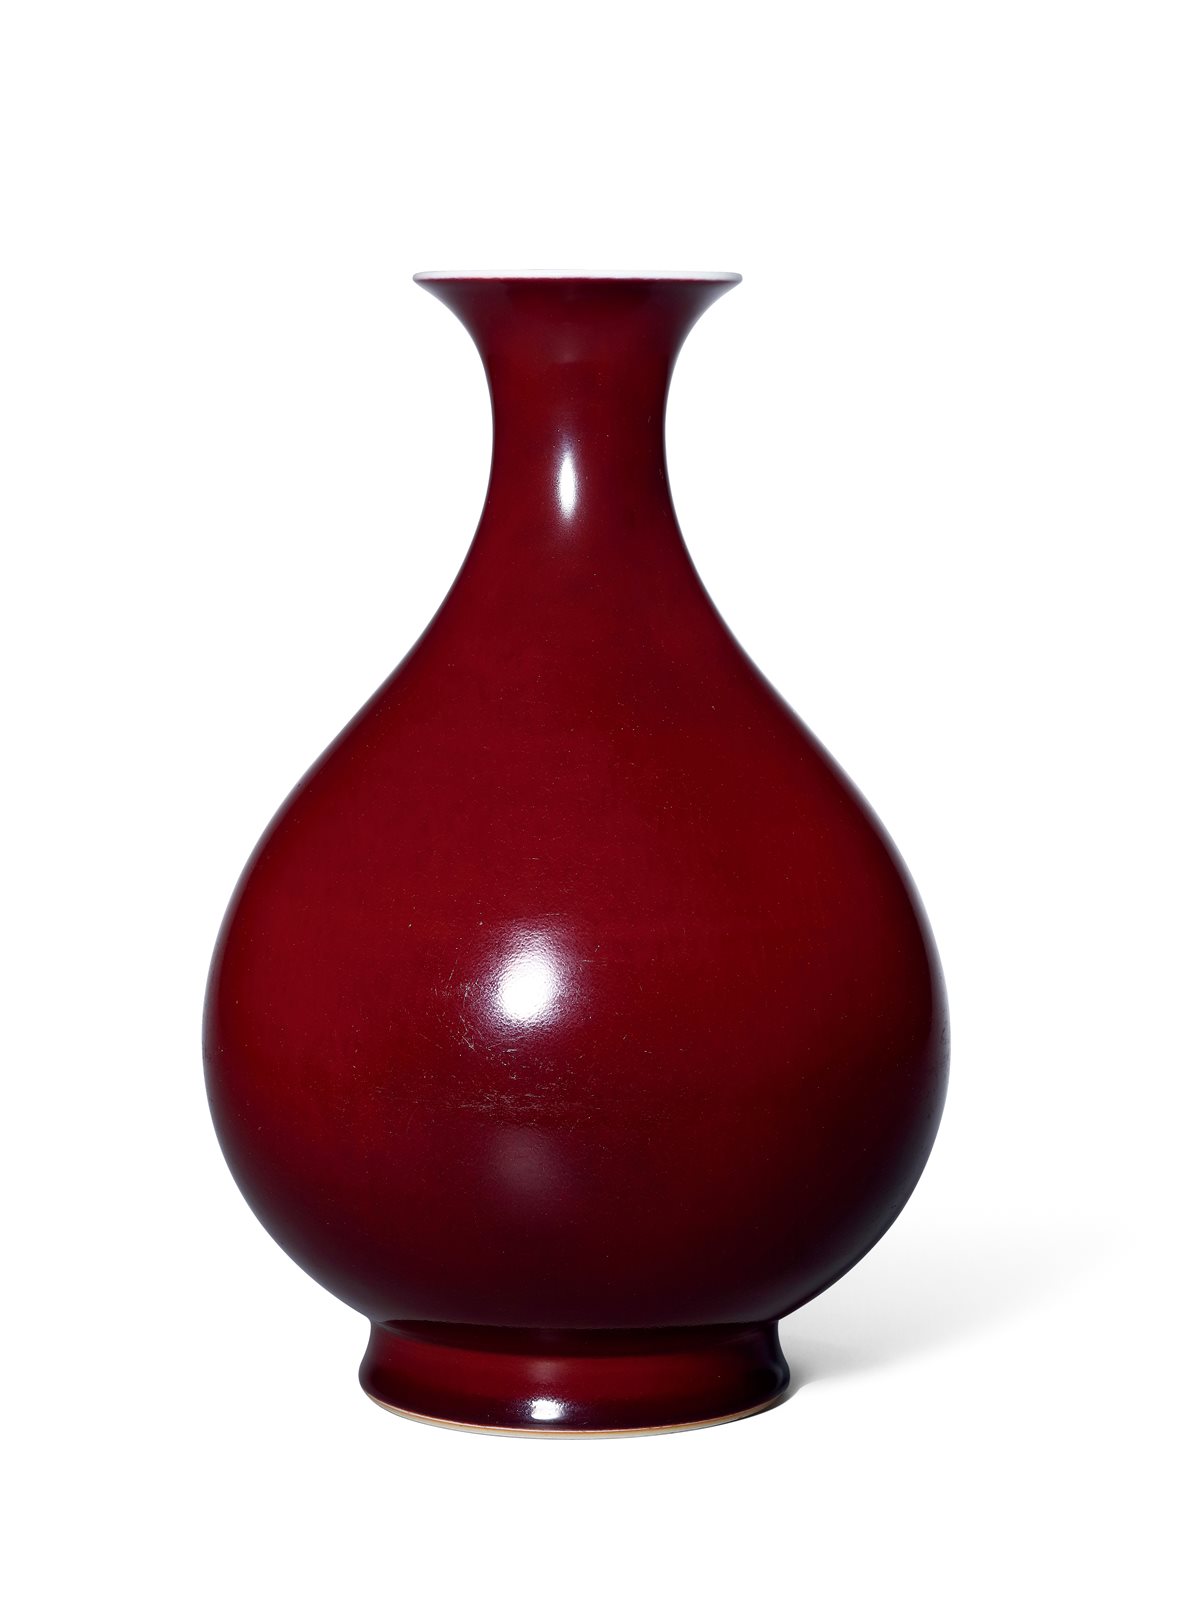 清乾隆 霁红釉玉壶春瓶